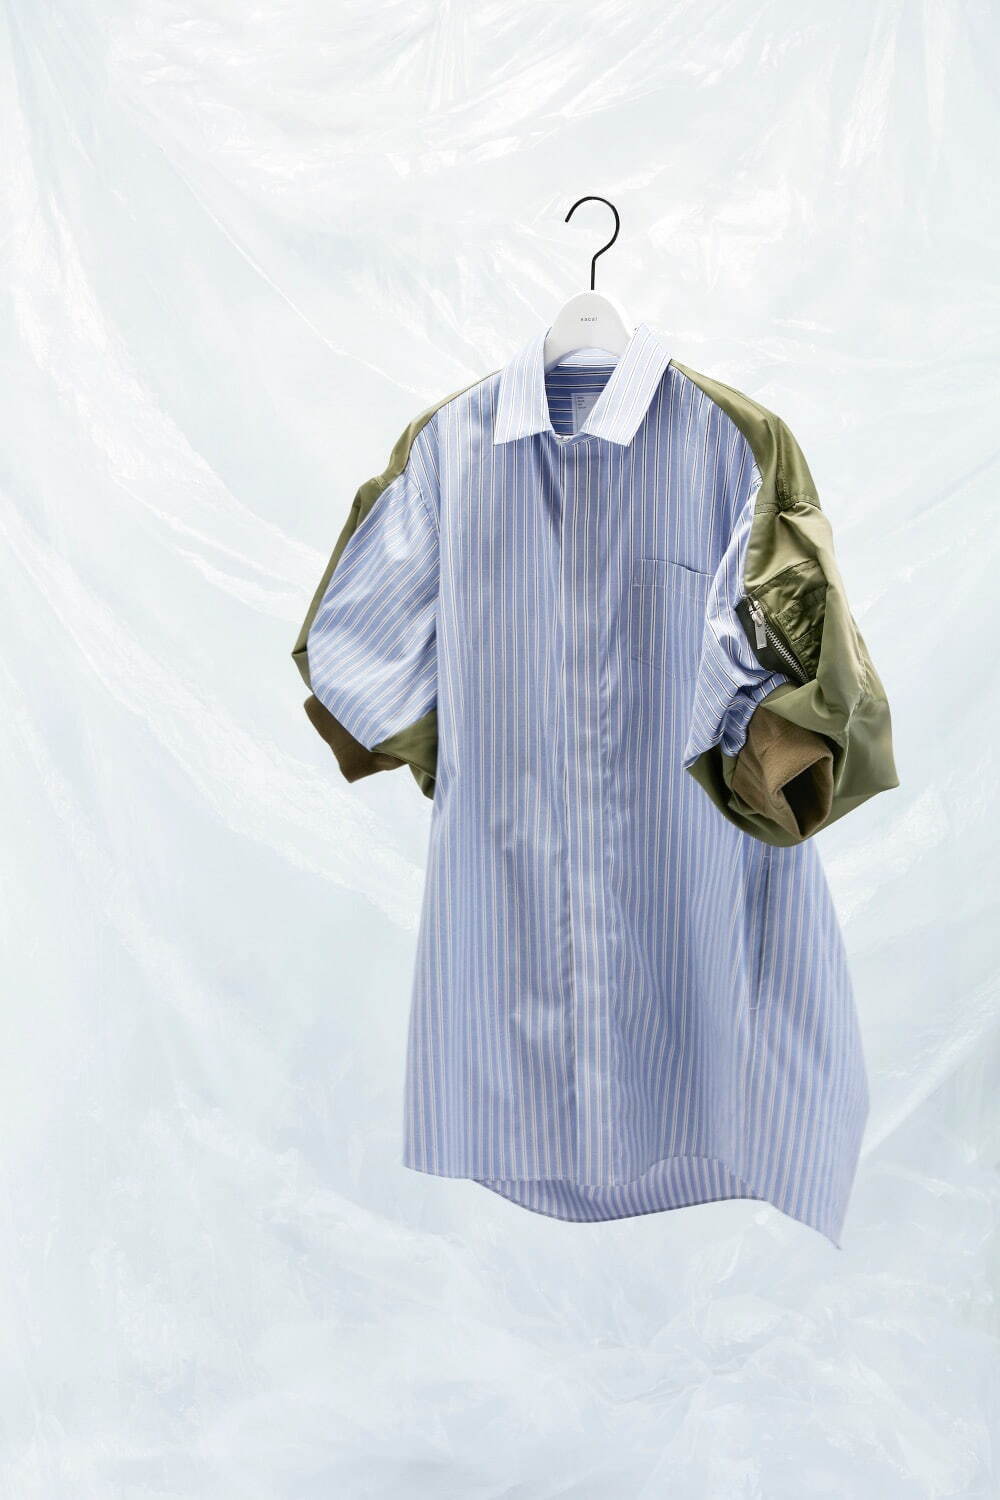 Cotton Poplin x Nylon Twill Dress 69,300円